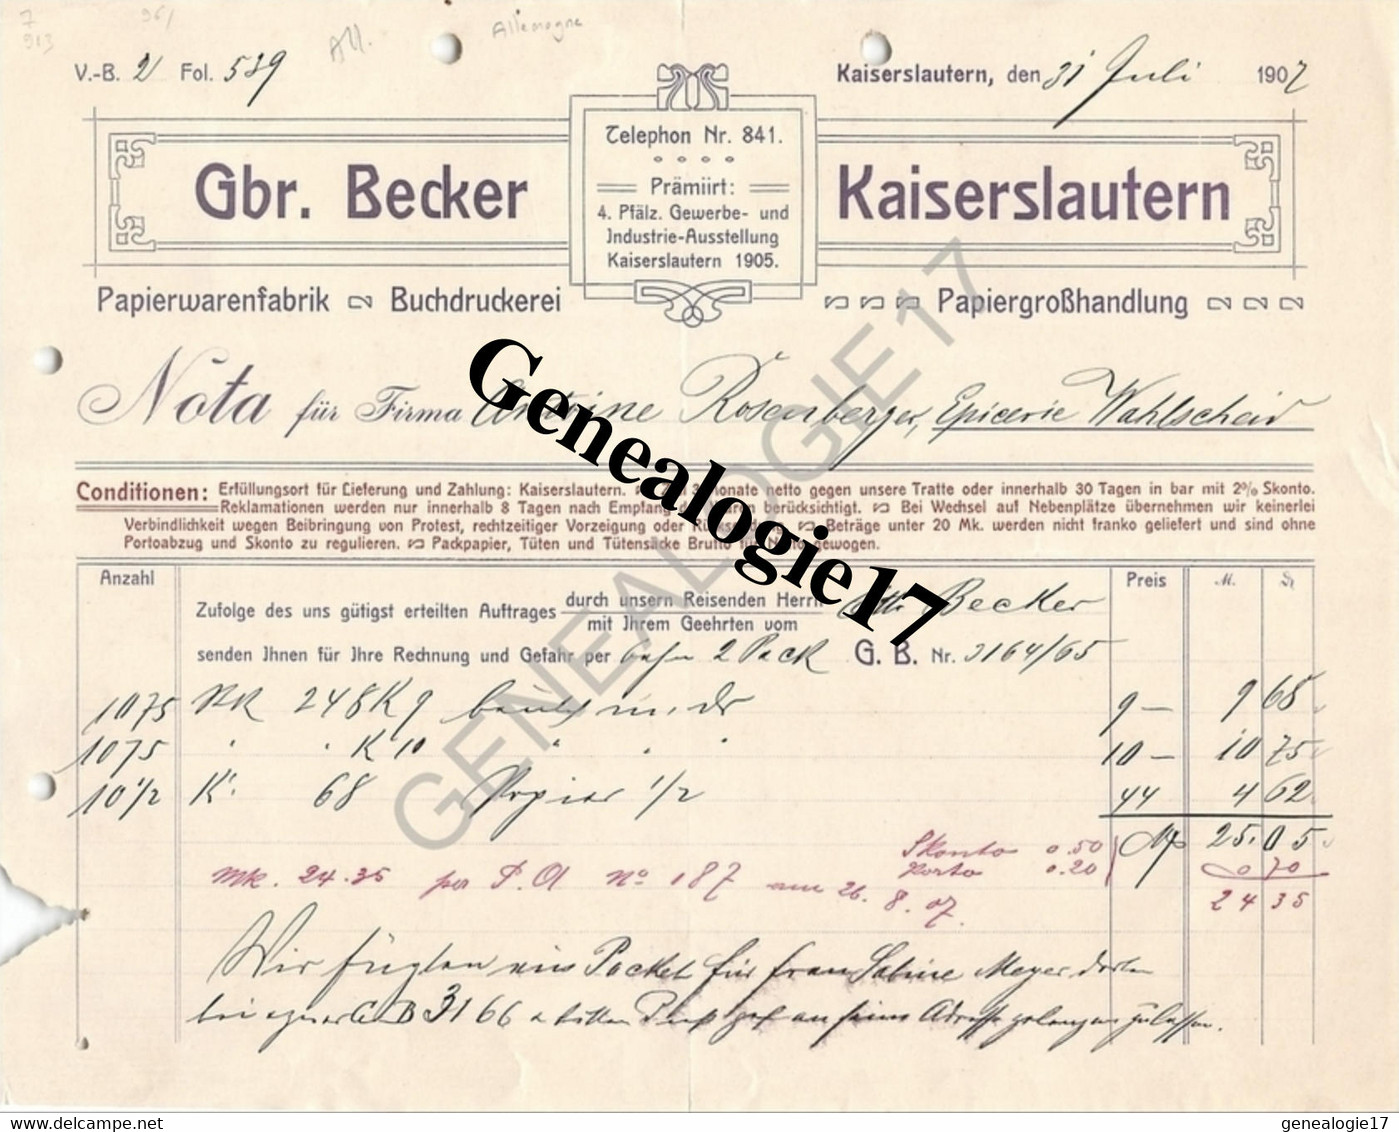 96 0692 ALLEMAGNE KAISERLAUTERN Rhenanie Palatinat 1907 Papier Warenfabrik GBR. BECKER Buchdruckerei - Imprimerie & Papeterie